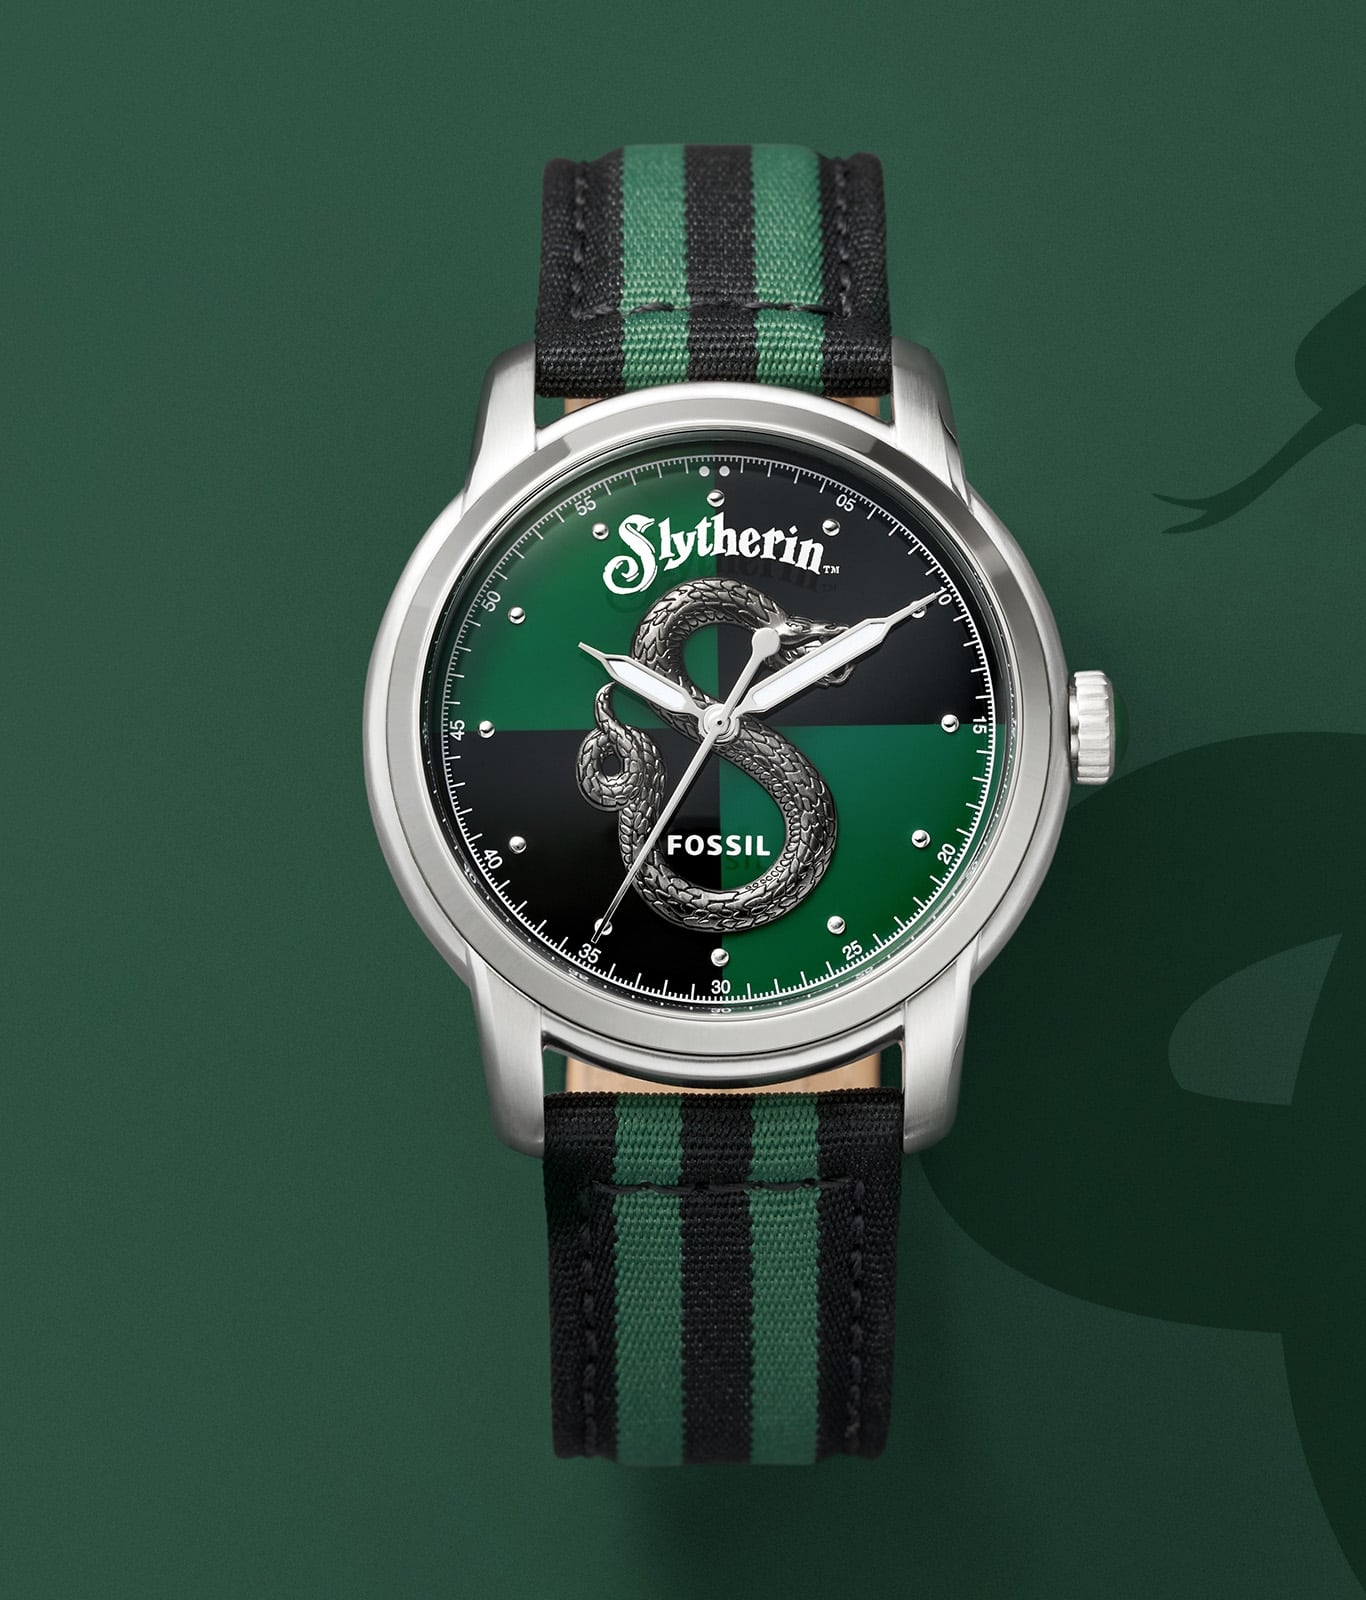 Reloj de la casa Slytherin en tono plateado con una correa en colores verde y negro.